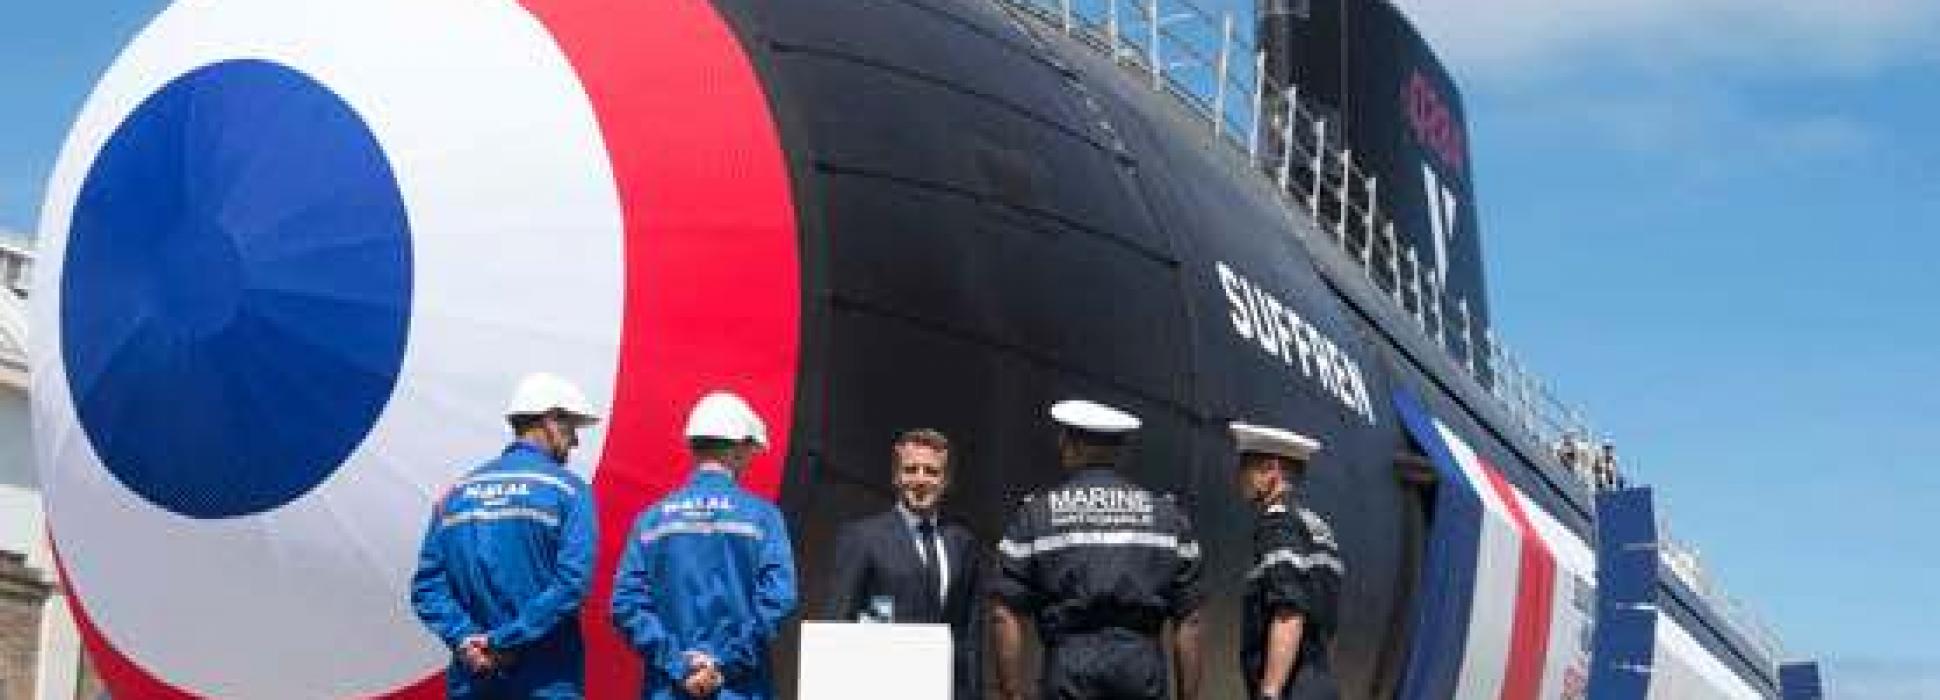 Le 12 juillet 2019 à Cherbourg, le président Emmanuel Macron a inauguré le Suffren , premier sous-marin de la classe Barracuda